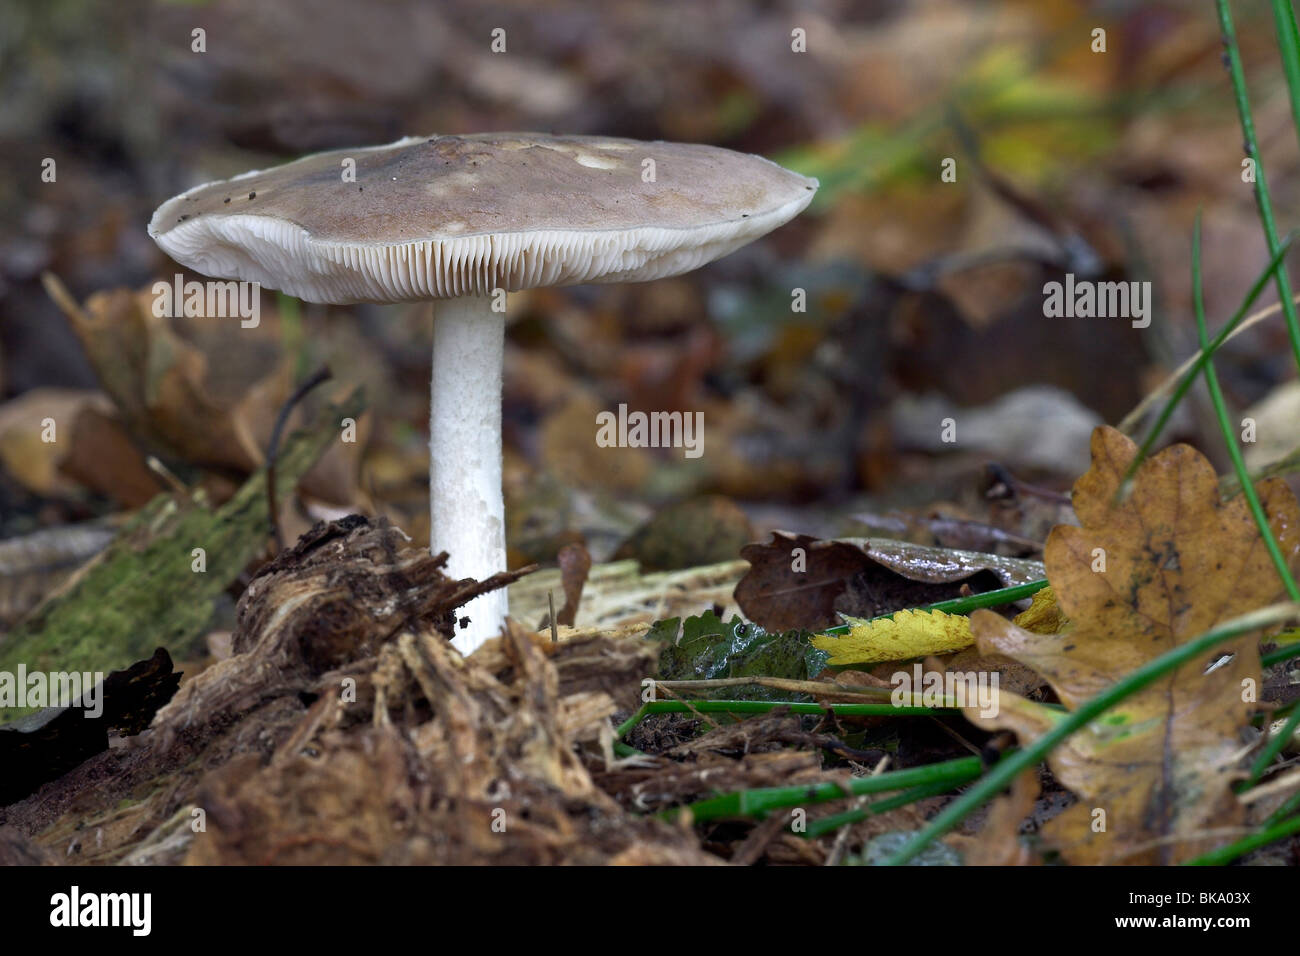 Deer Mushroom between the fallen leaves Stock Photo